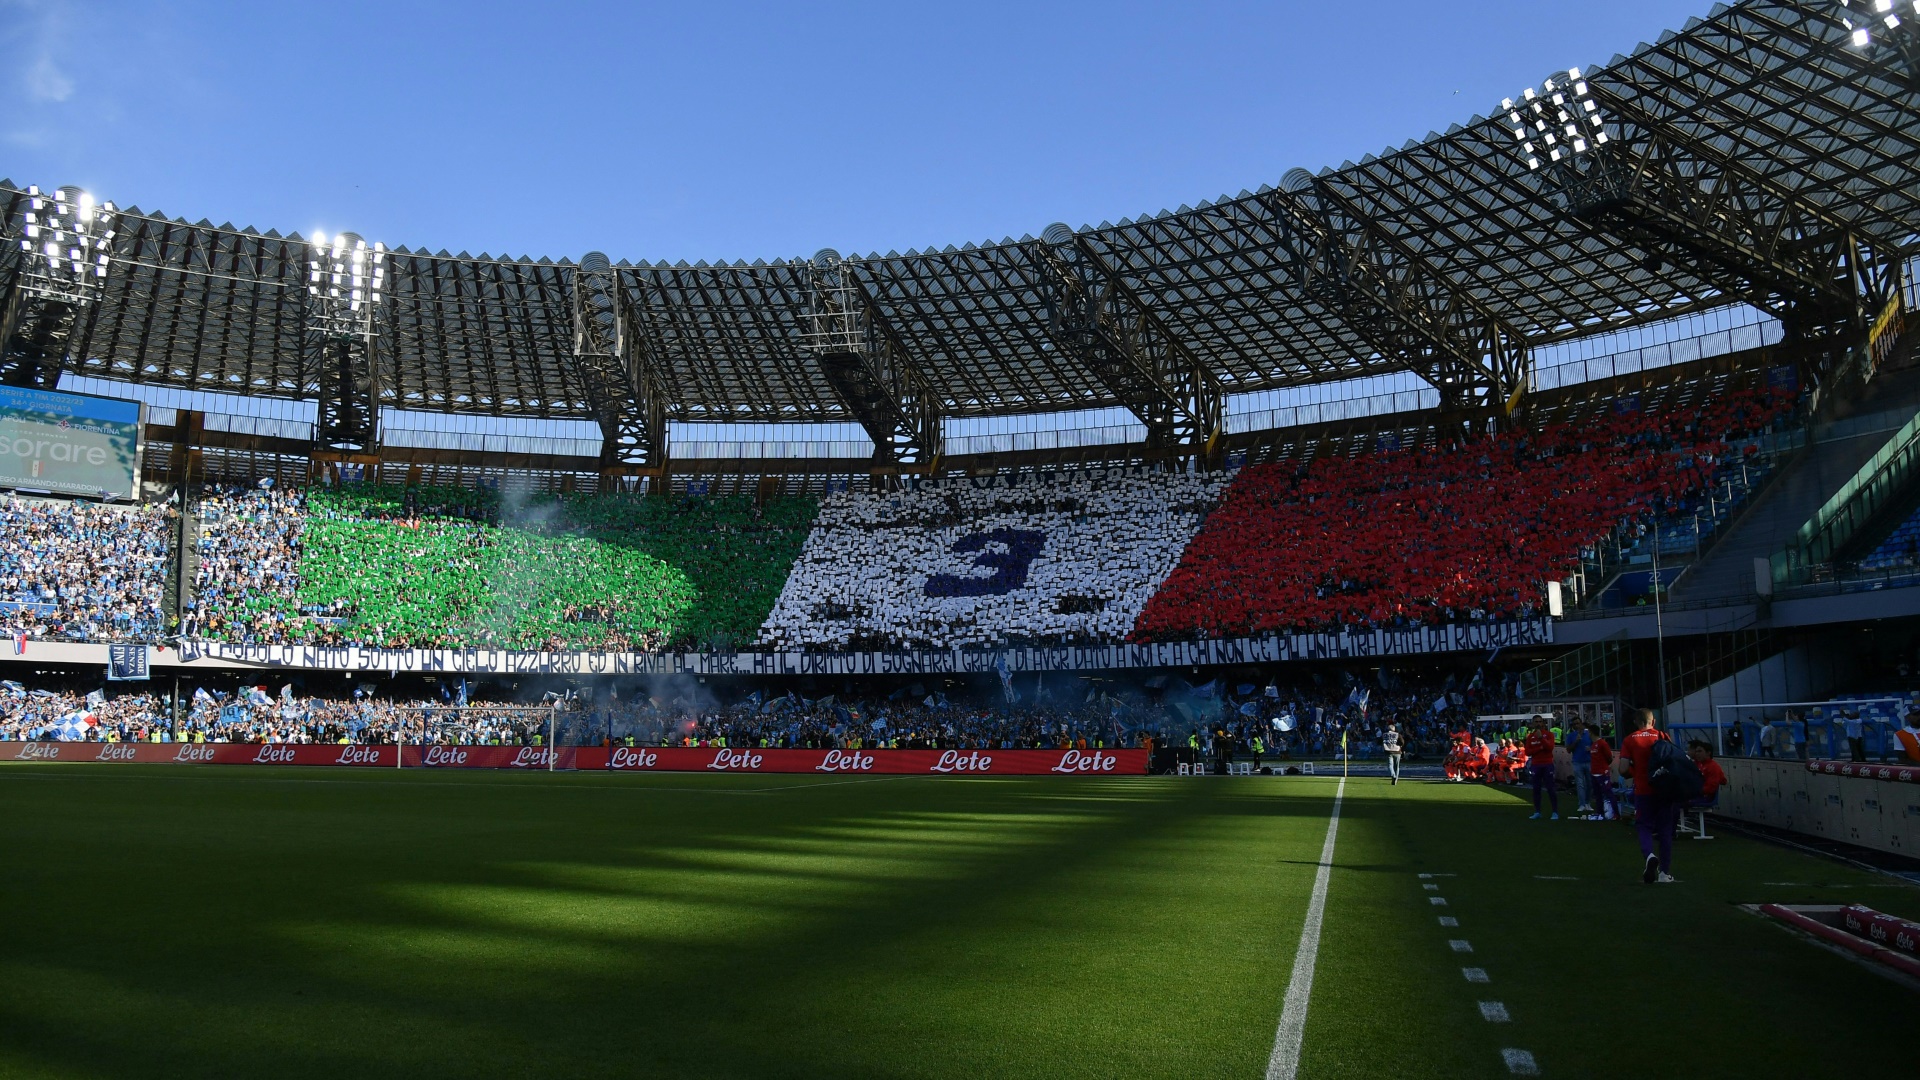 Der italienische Fußballverband kündigt Veränderungen an